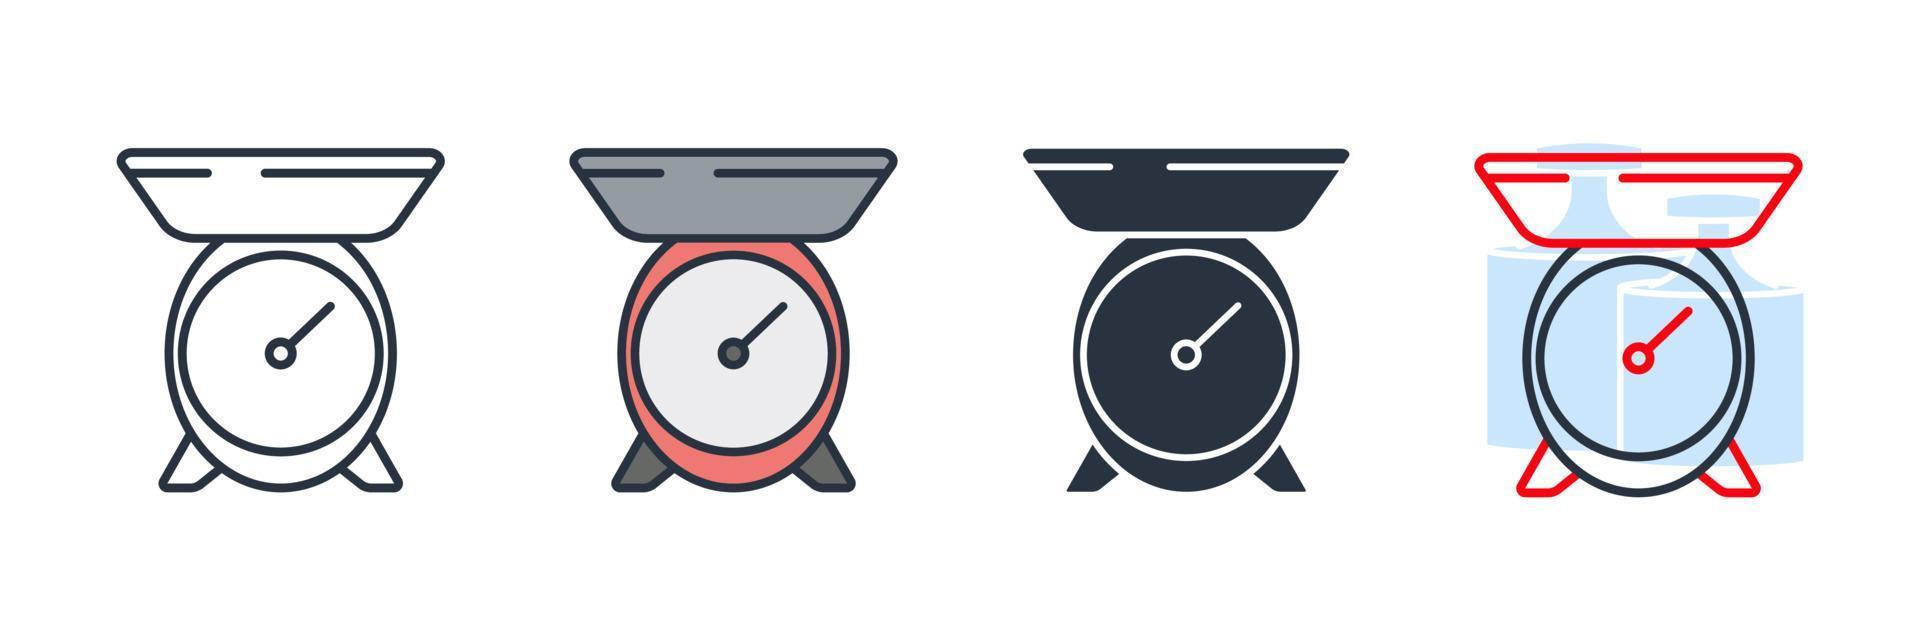 illustrazione vettoriale del logo dell'icona della bilancia da cucina. modello di simbolo di peso per la raccolta di grafica e web design